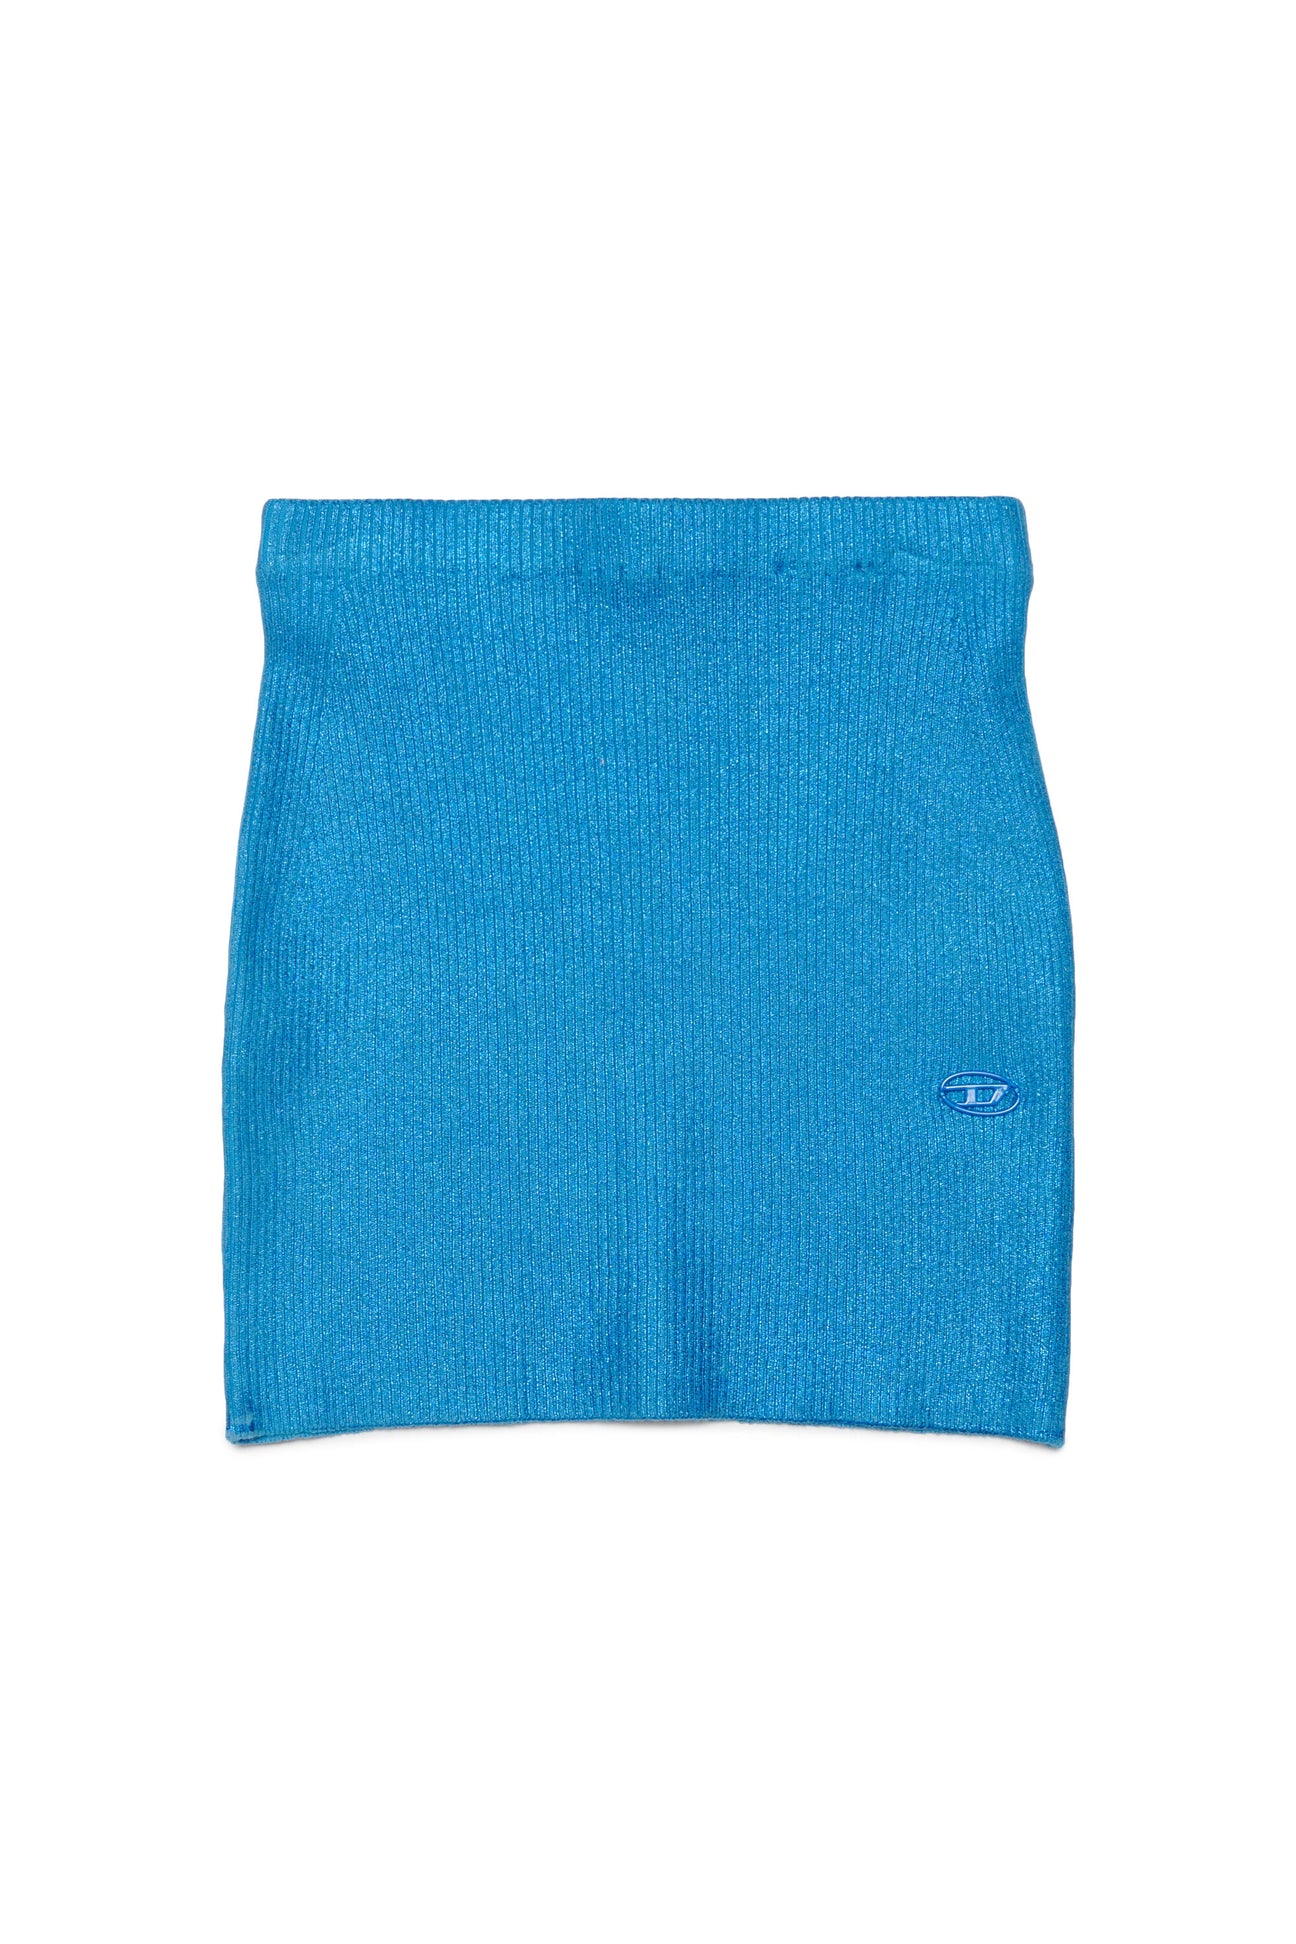 Diesel Kids Oval-D fleece cotton shorts - Blue